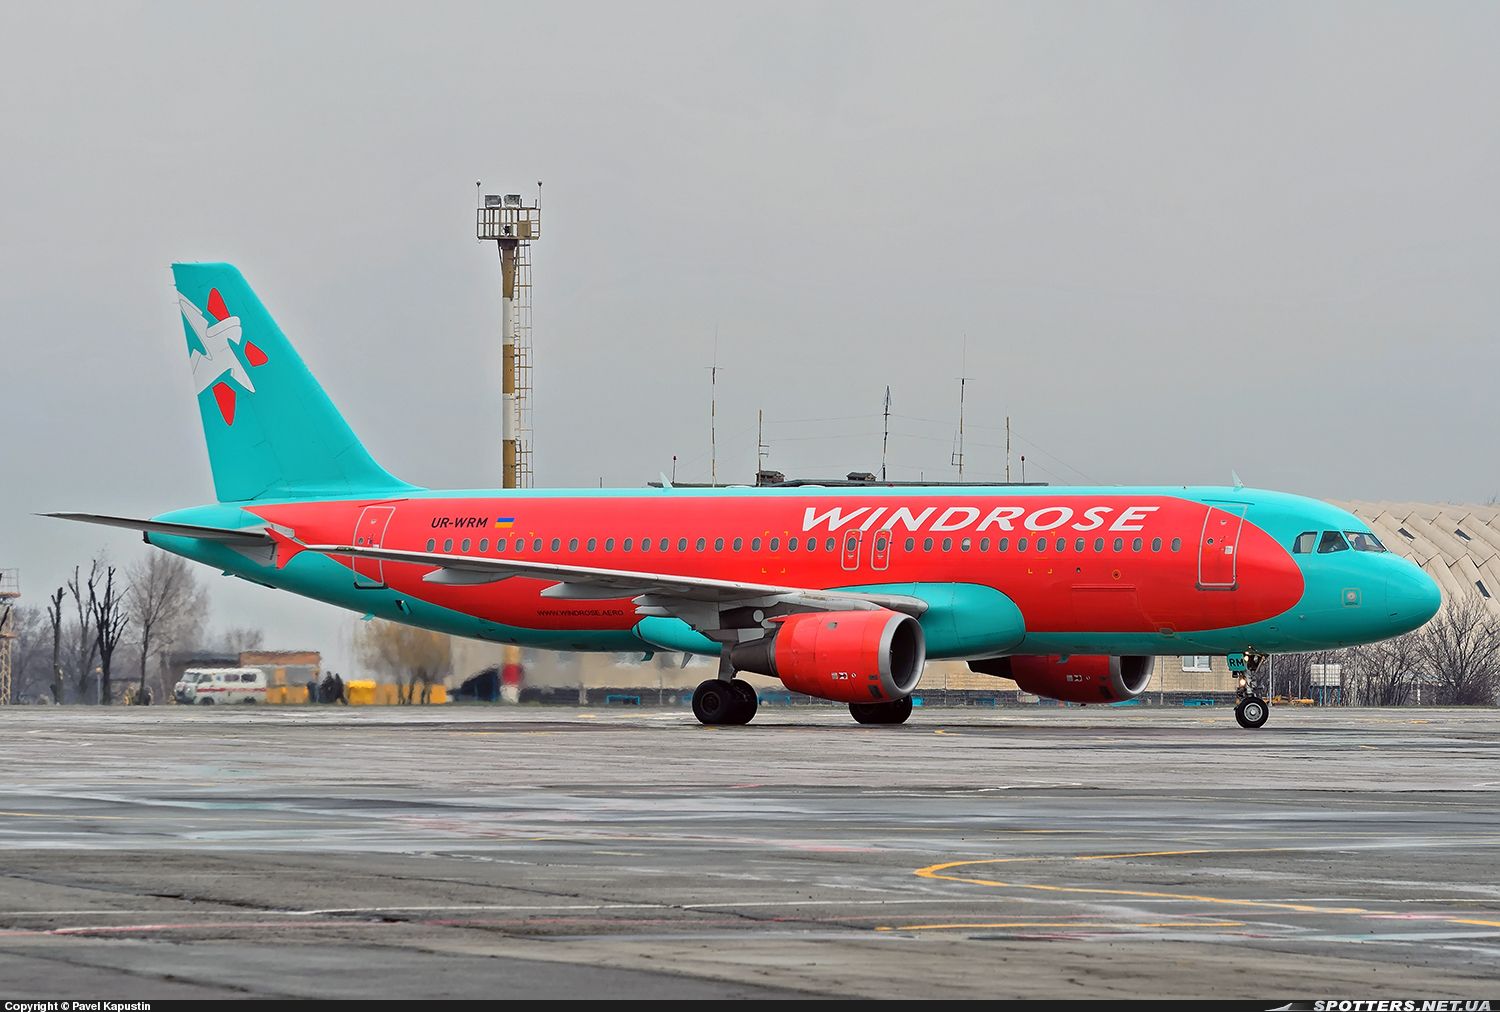 Авиакомпания «Windrose» запускает рейсы Киев-Запорожье